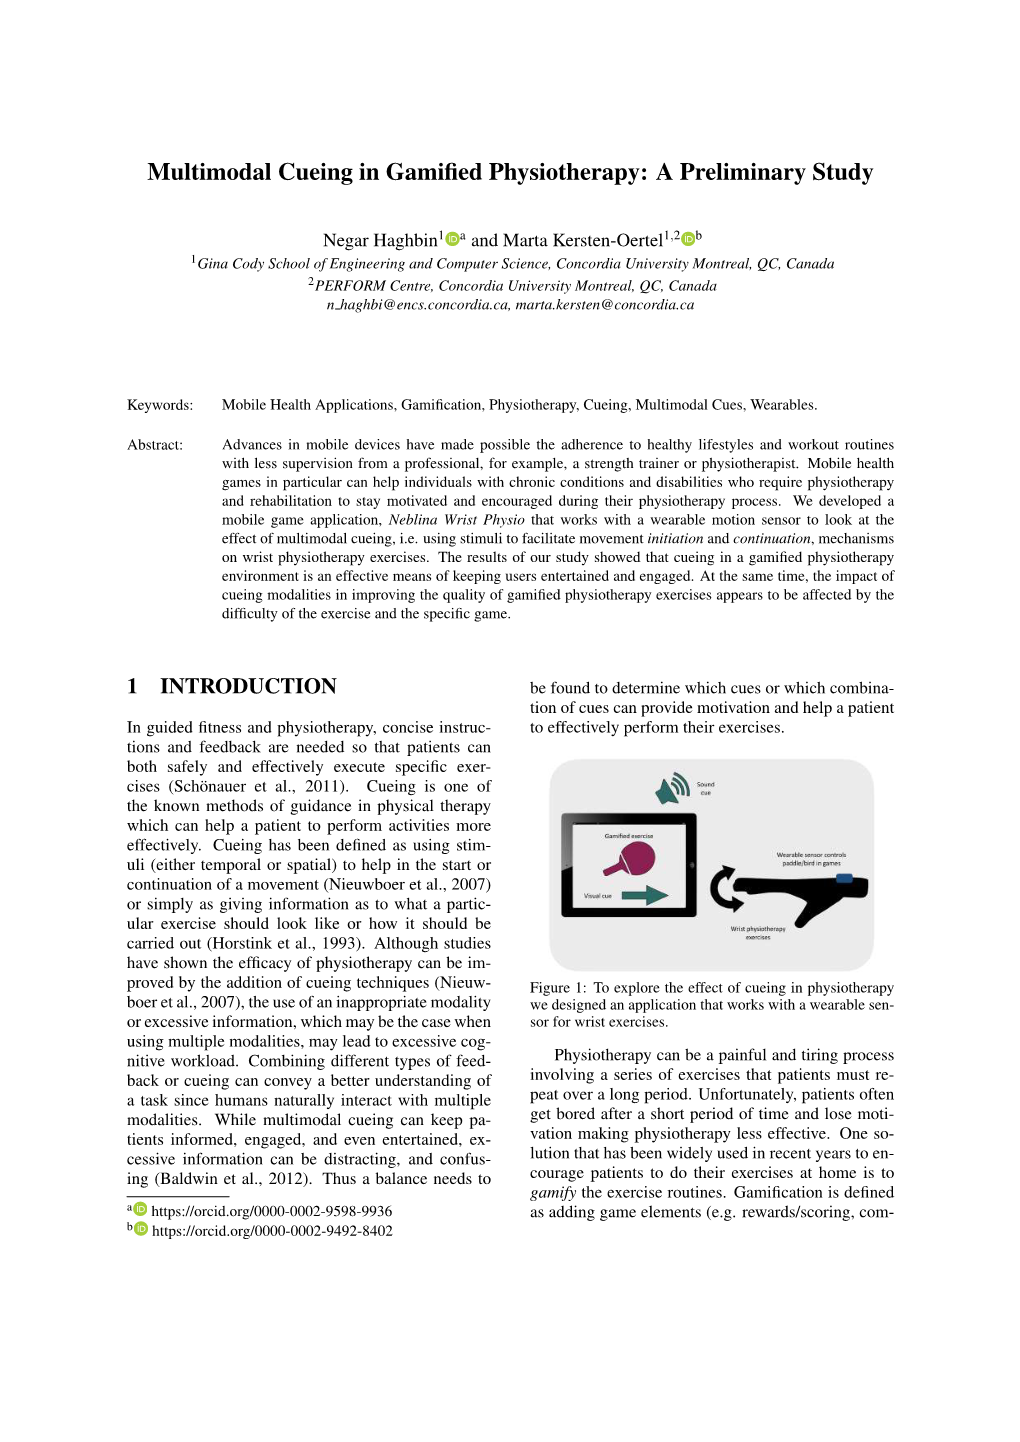 PDF (Preprint)